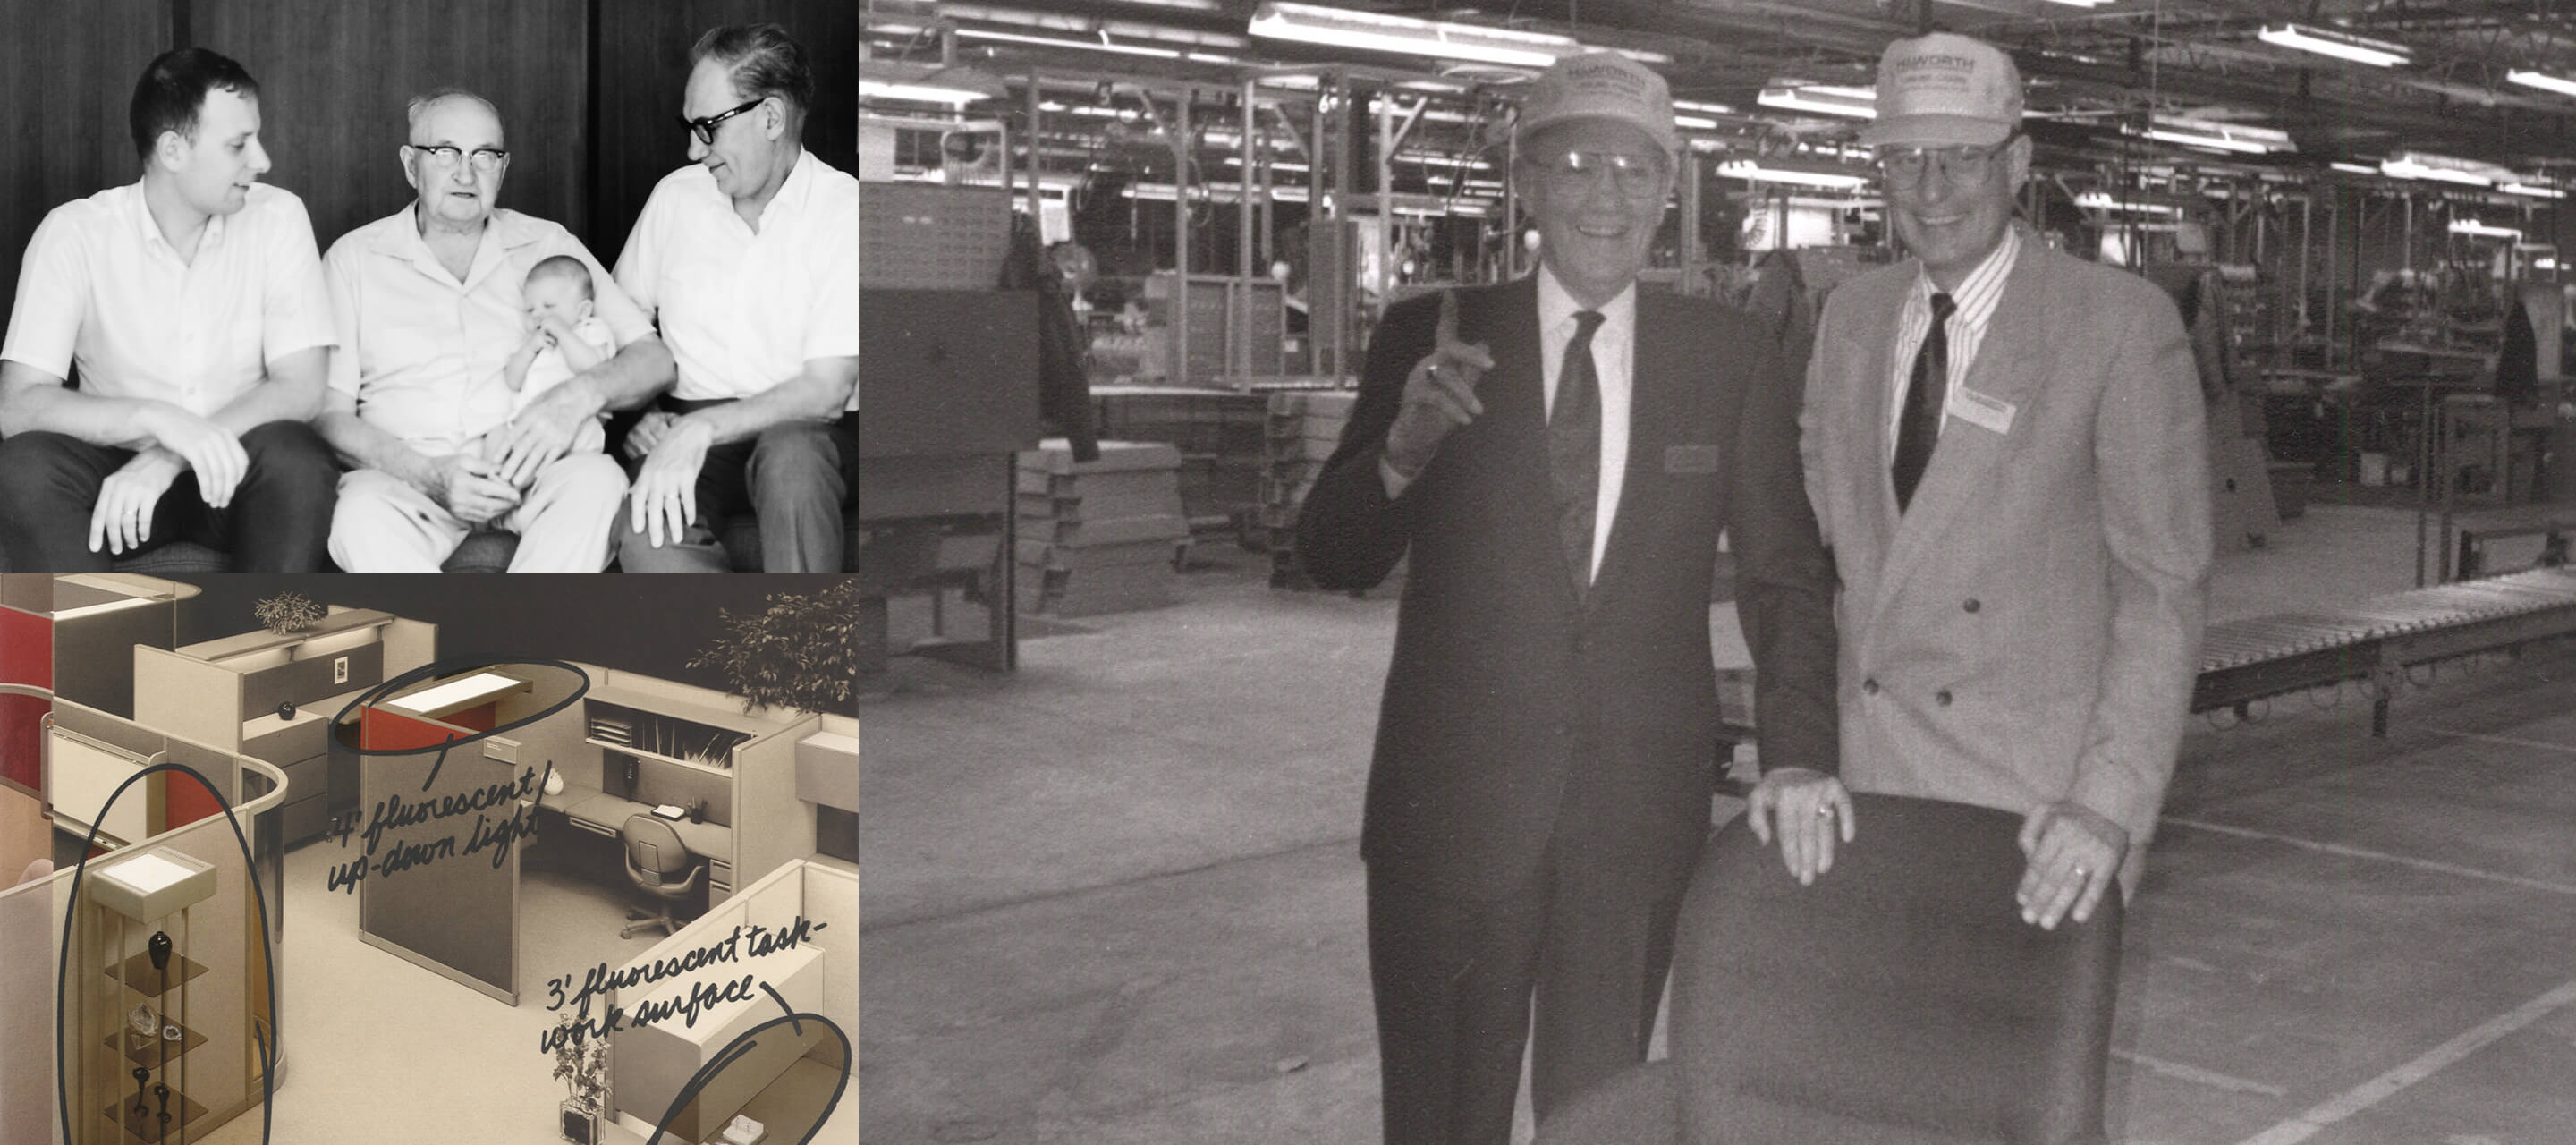 1960年代- G.W.の息子Dickは、1969年に兵役から帰還し、製品製造と新しい製品開発の責任を引き受けました。彼の目標はオフィスモジュールシステムを開発することでした。Dickは1994年から2009年の間、会社を率います。そして、その後は彼の息子であるMatthewがその責任を引き継いでいます。